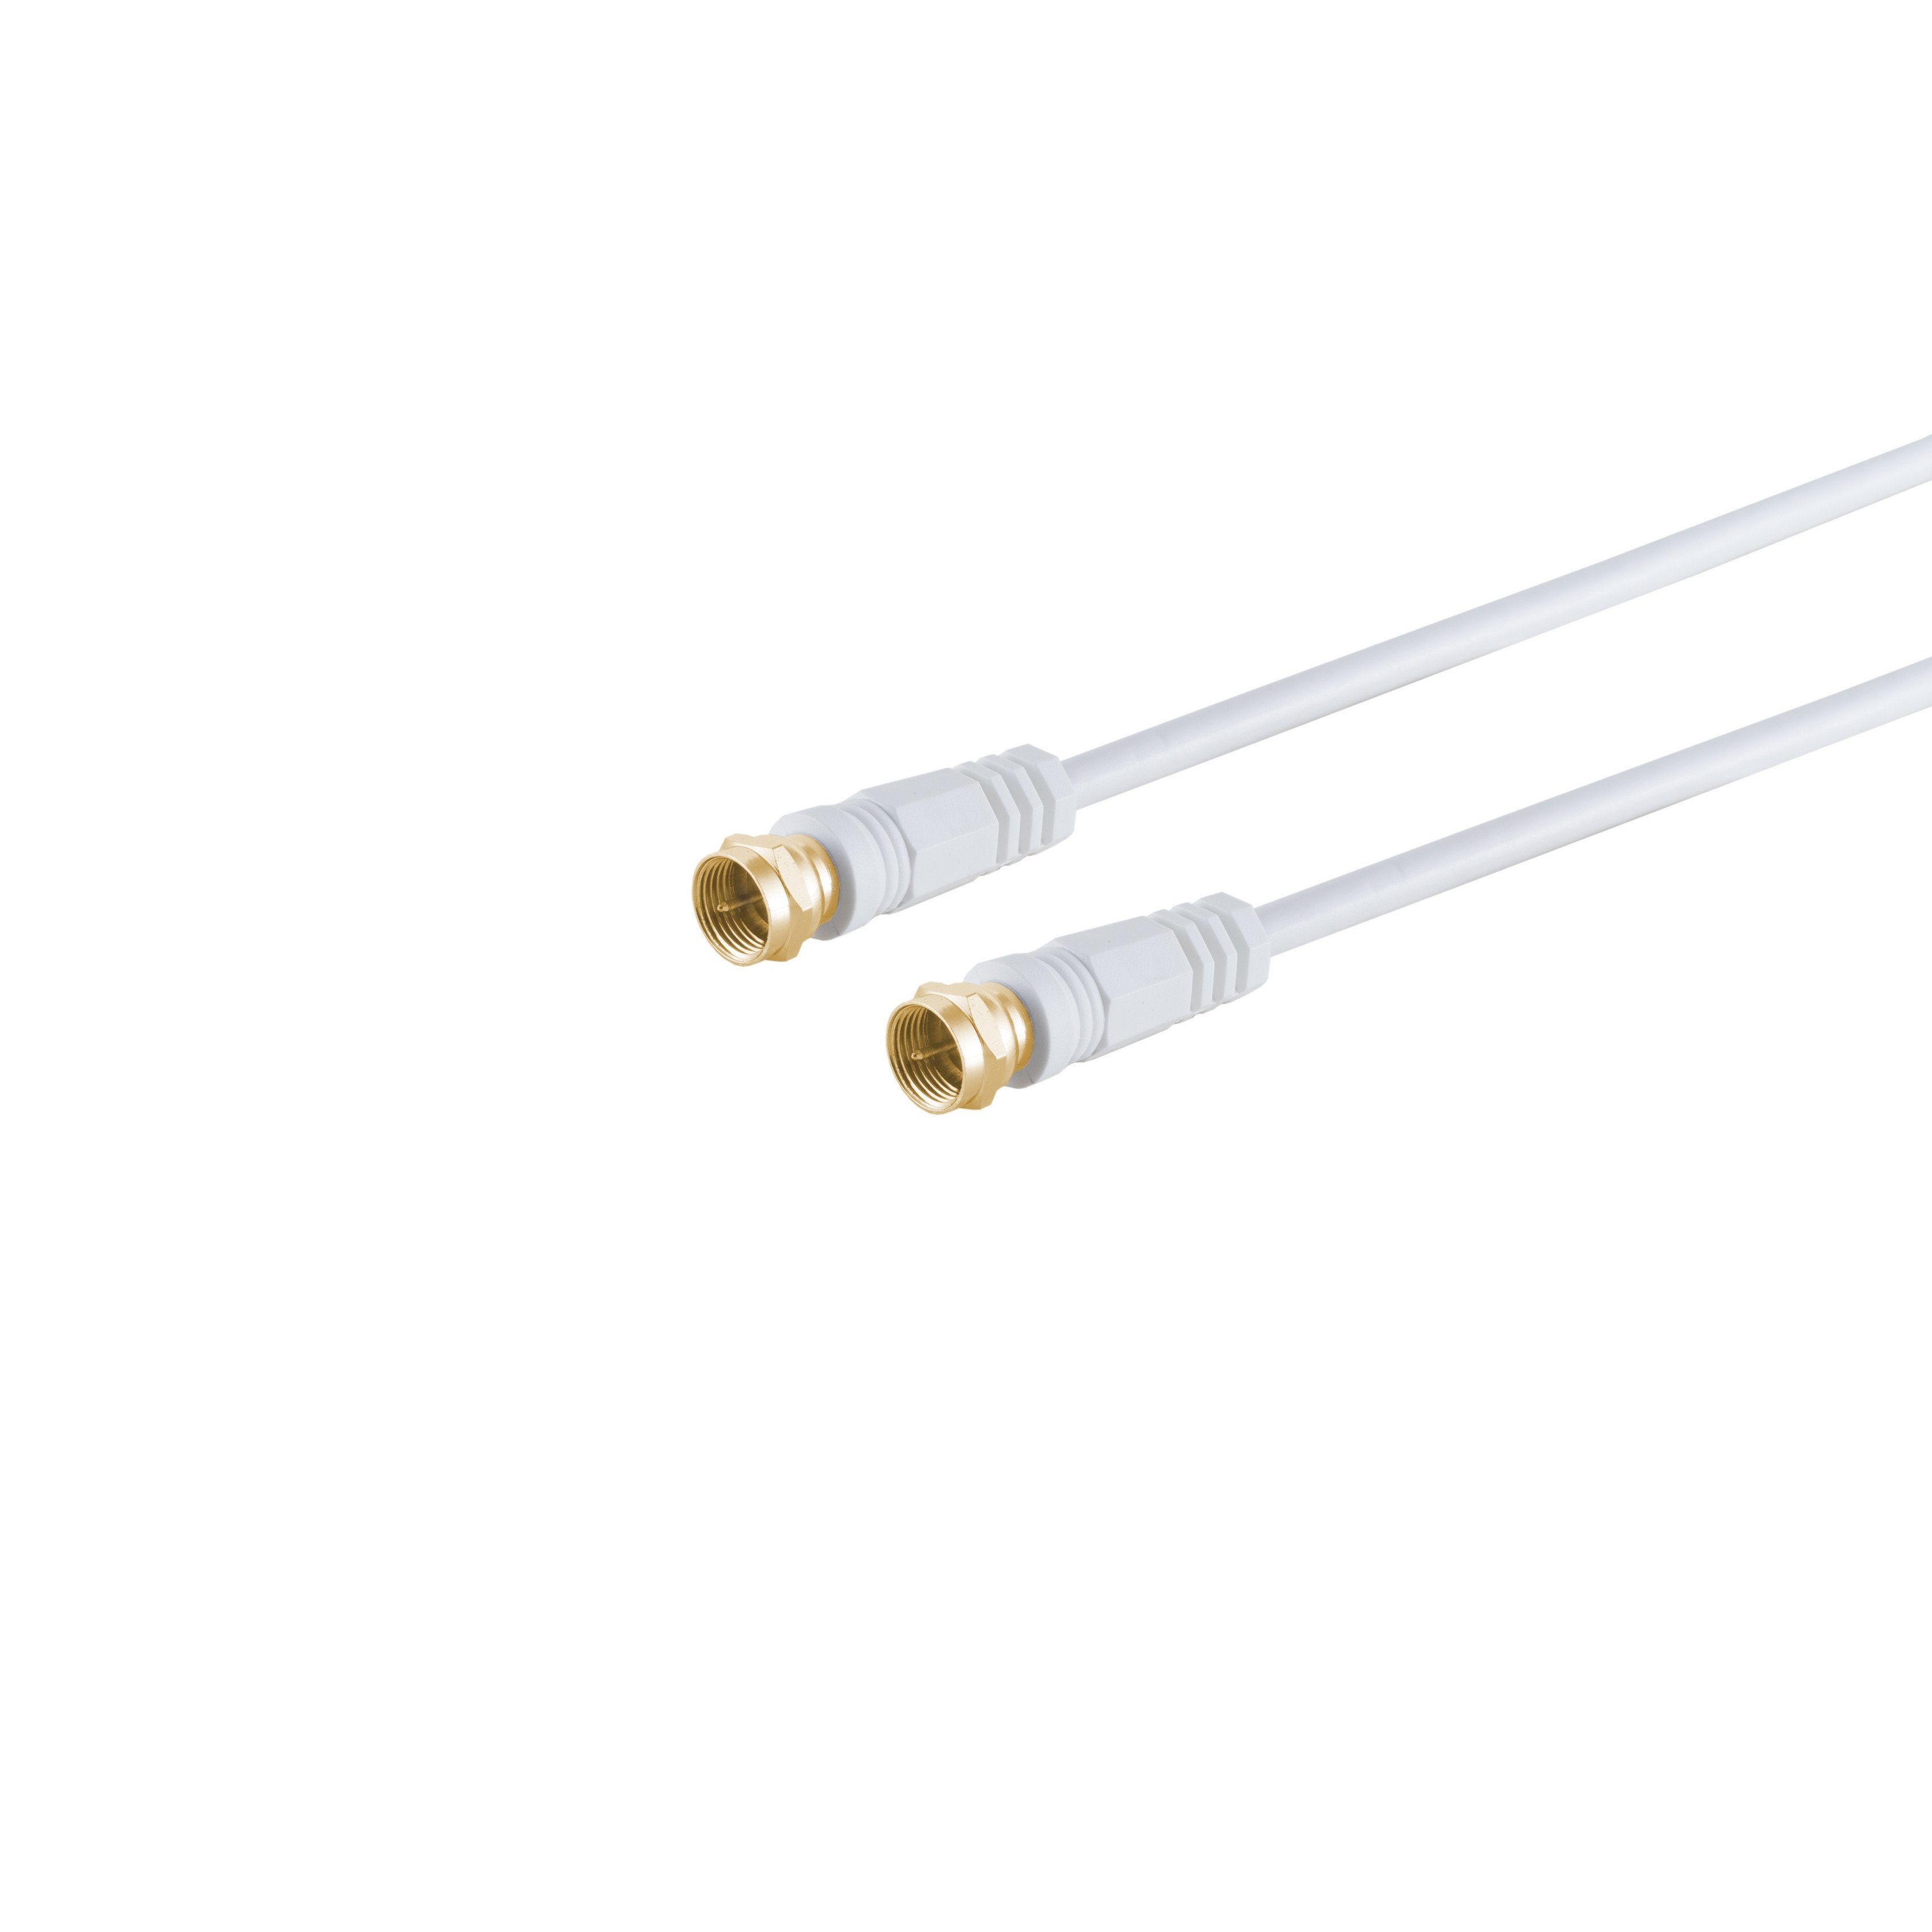 S-Conn F-Stecker - F-Stecker verg. Ferrit, weiß, 1,5m SAT-Kabel, (150,00 cm)